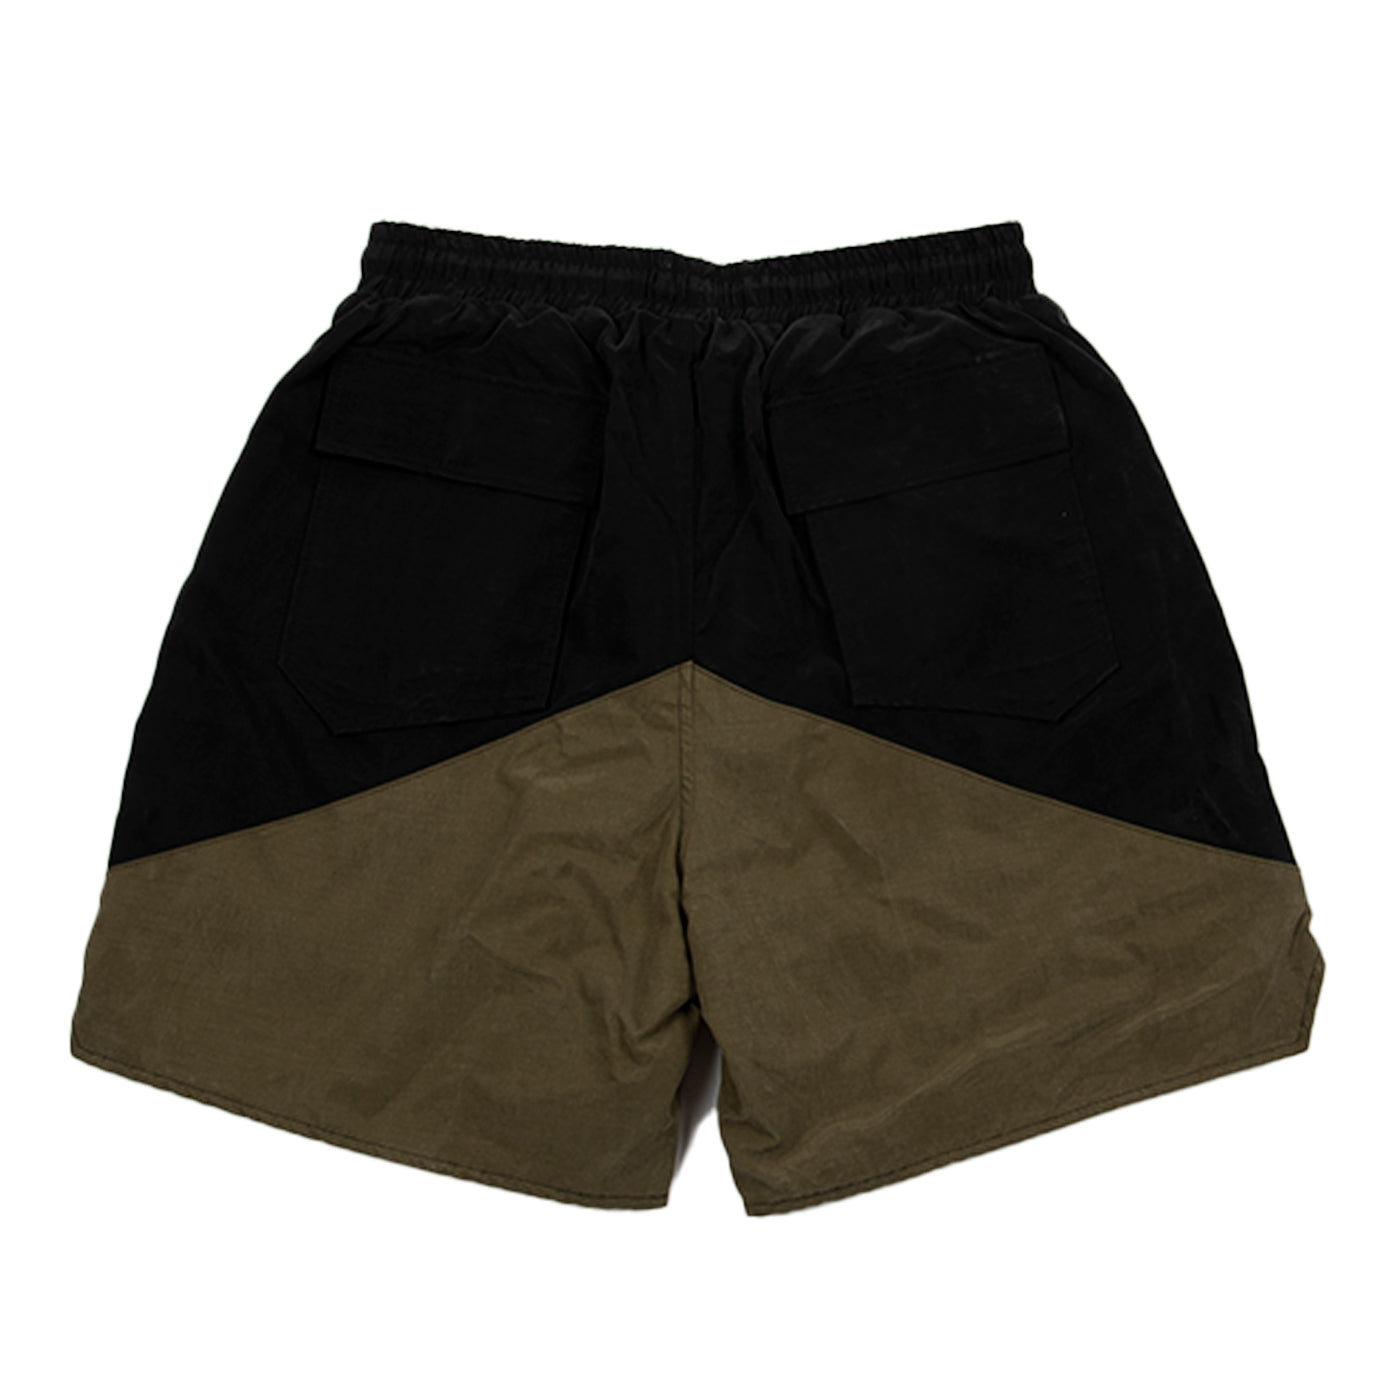 Rhude FW21 Yachting Shorts, Black/Olive